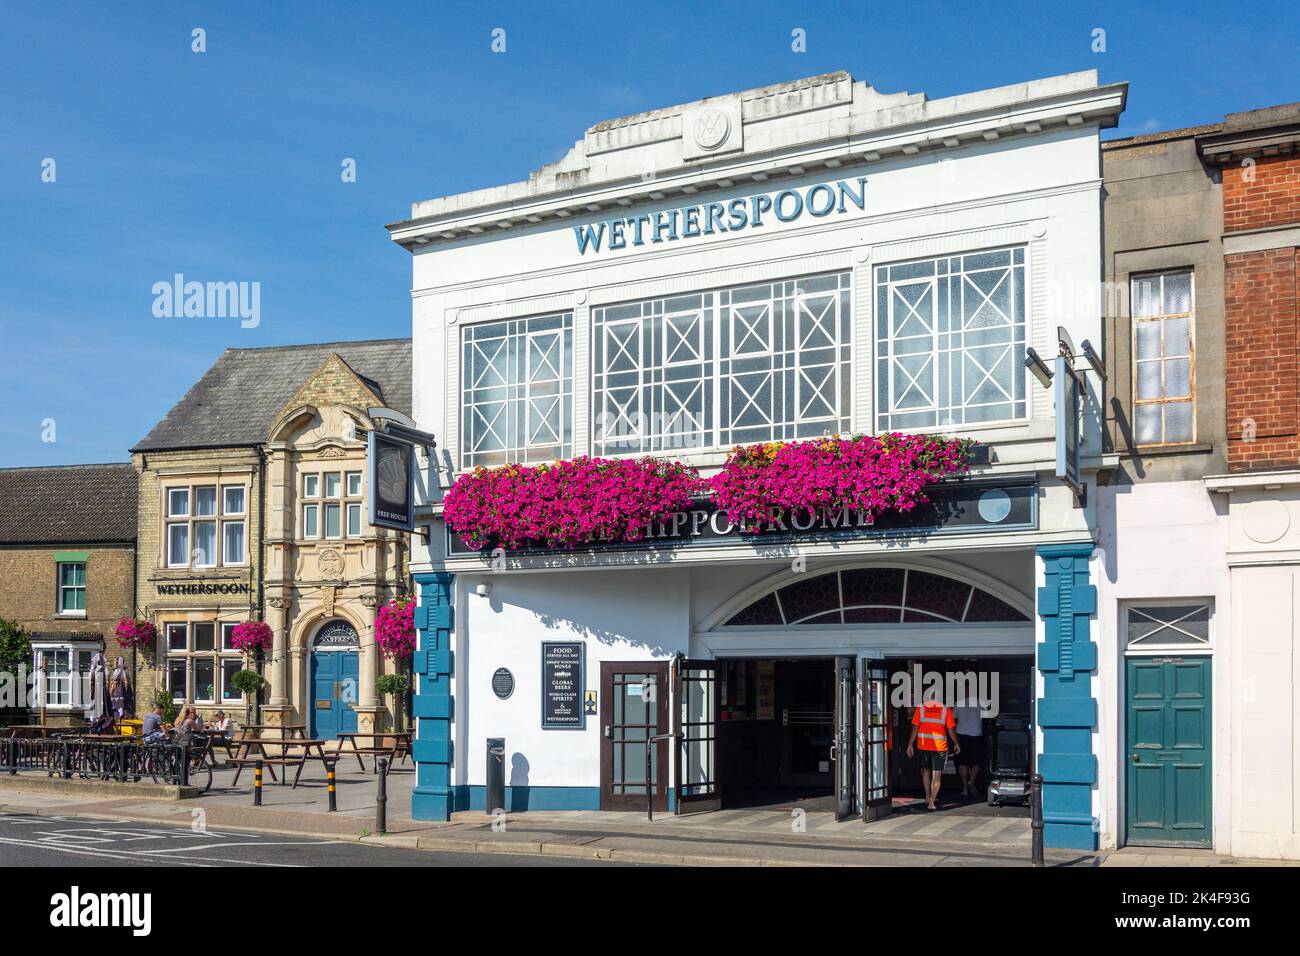 The Hippodrome Wetherspoon Pub, Gordon Avenue, March, Cambridgeshire, England, United Kingdom Stock Photo